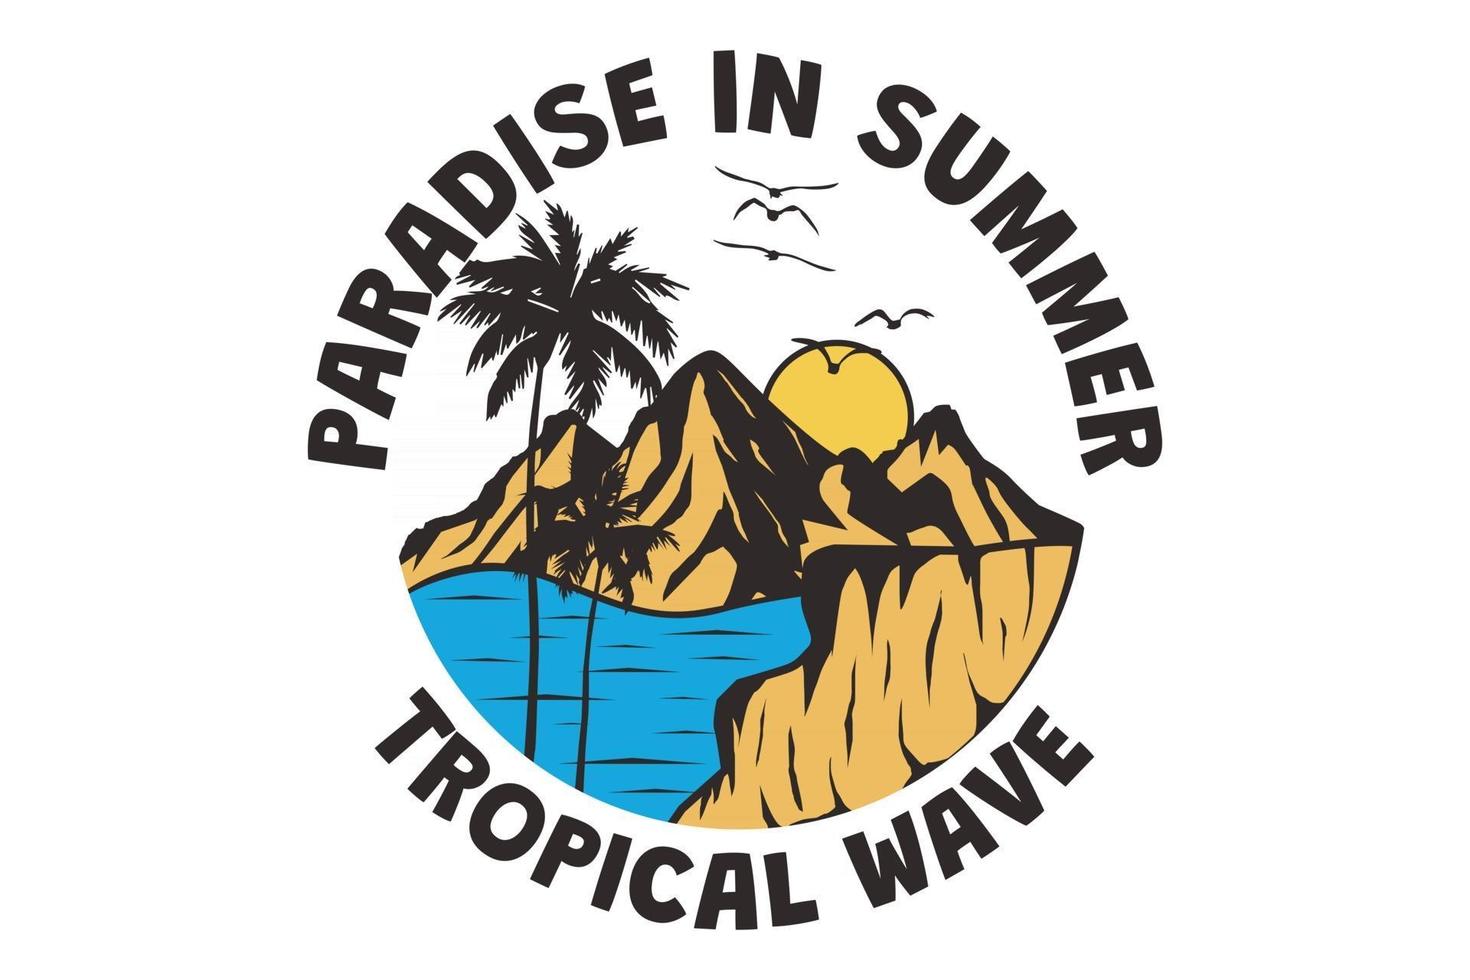 camiseta paraíso en verano, onda tropical dibujada a mano estilo retro vintage vector